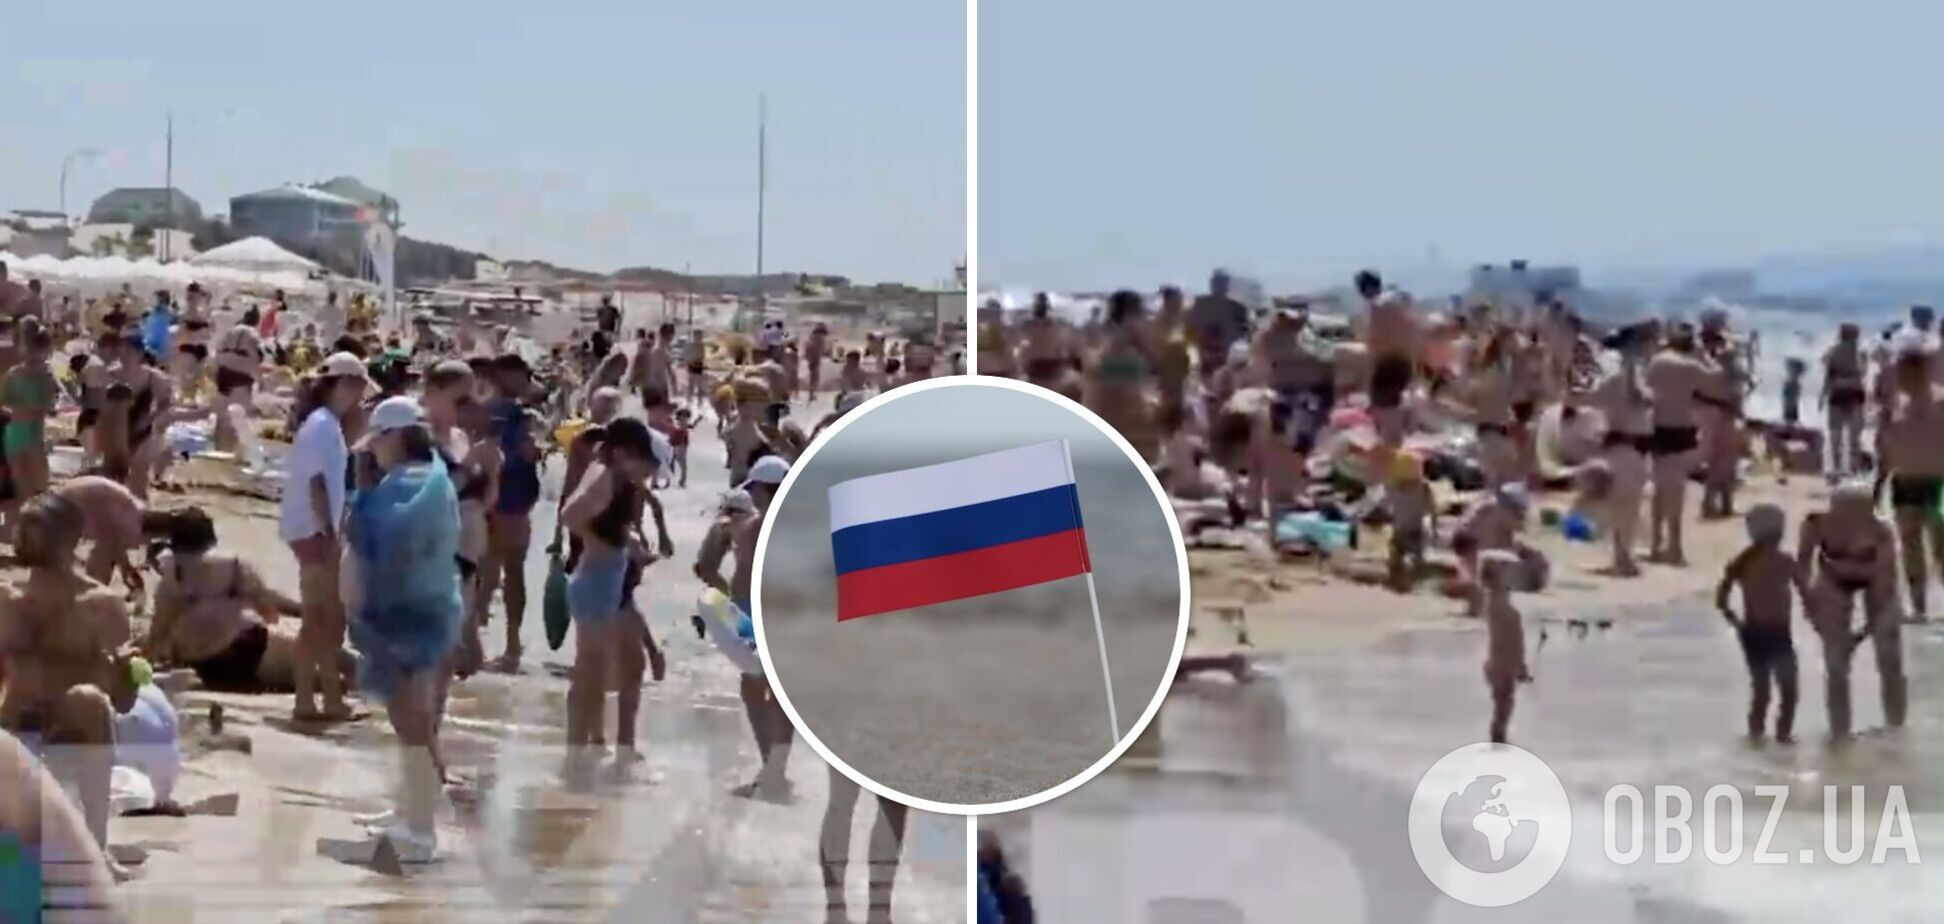 Россияне испугались взрывов в Крыму и бросились на родные пляжи: у моря давка и крики, плавают по очереди. Фото